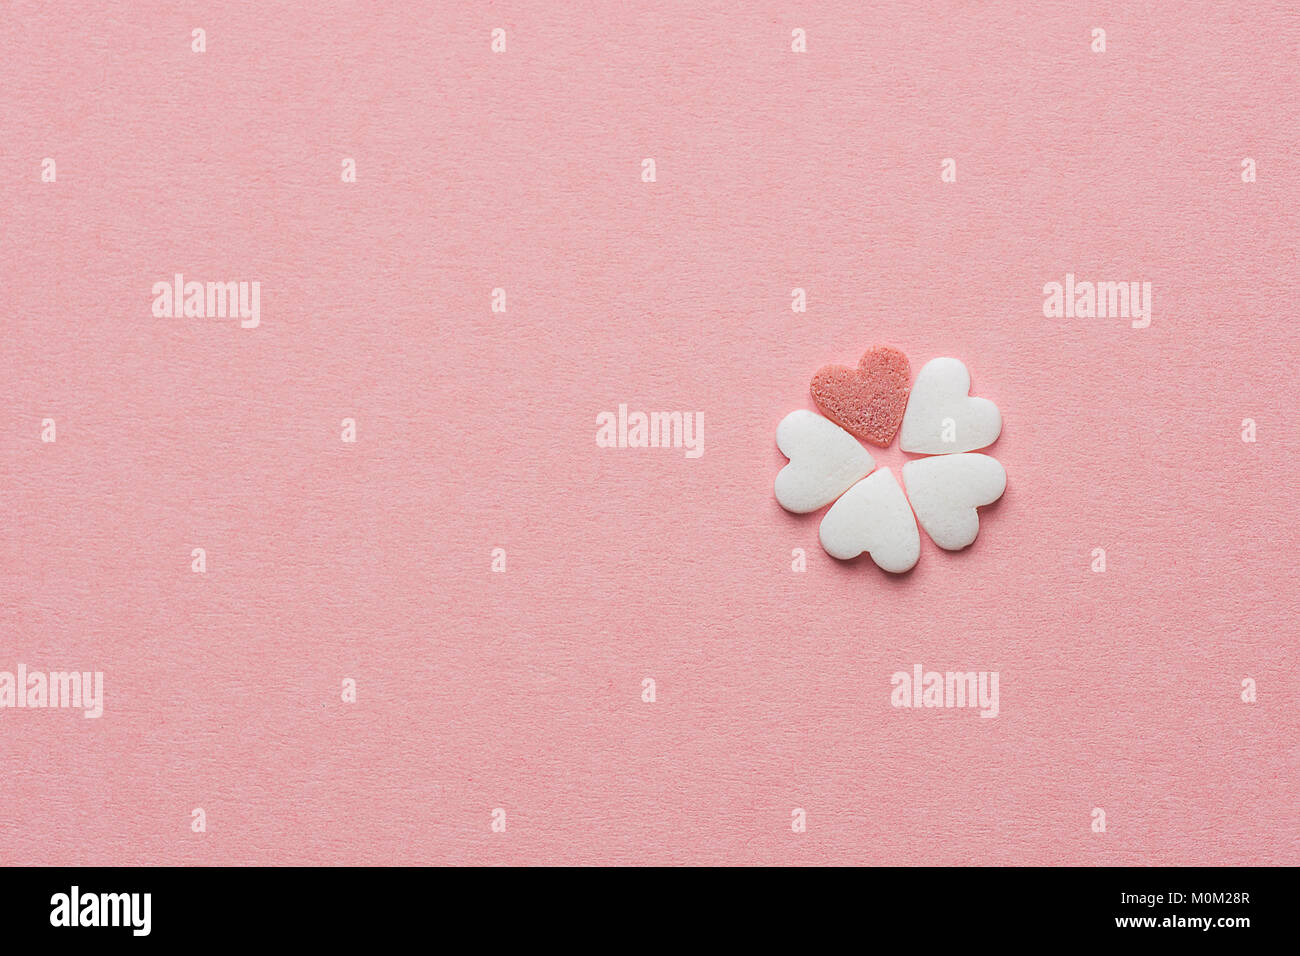 Petite jolie fleur faite de sucre en forme de coeur rouge et blanc Candy Sprinkles sur fond rose pastel. Saint Valentin Fête des mères enfants la créativité de bienfaisance Banque D'Images